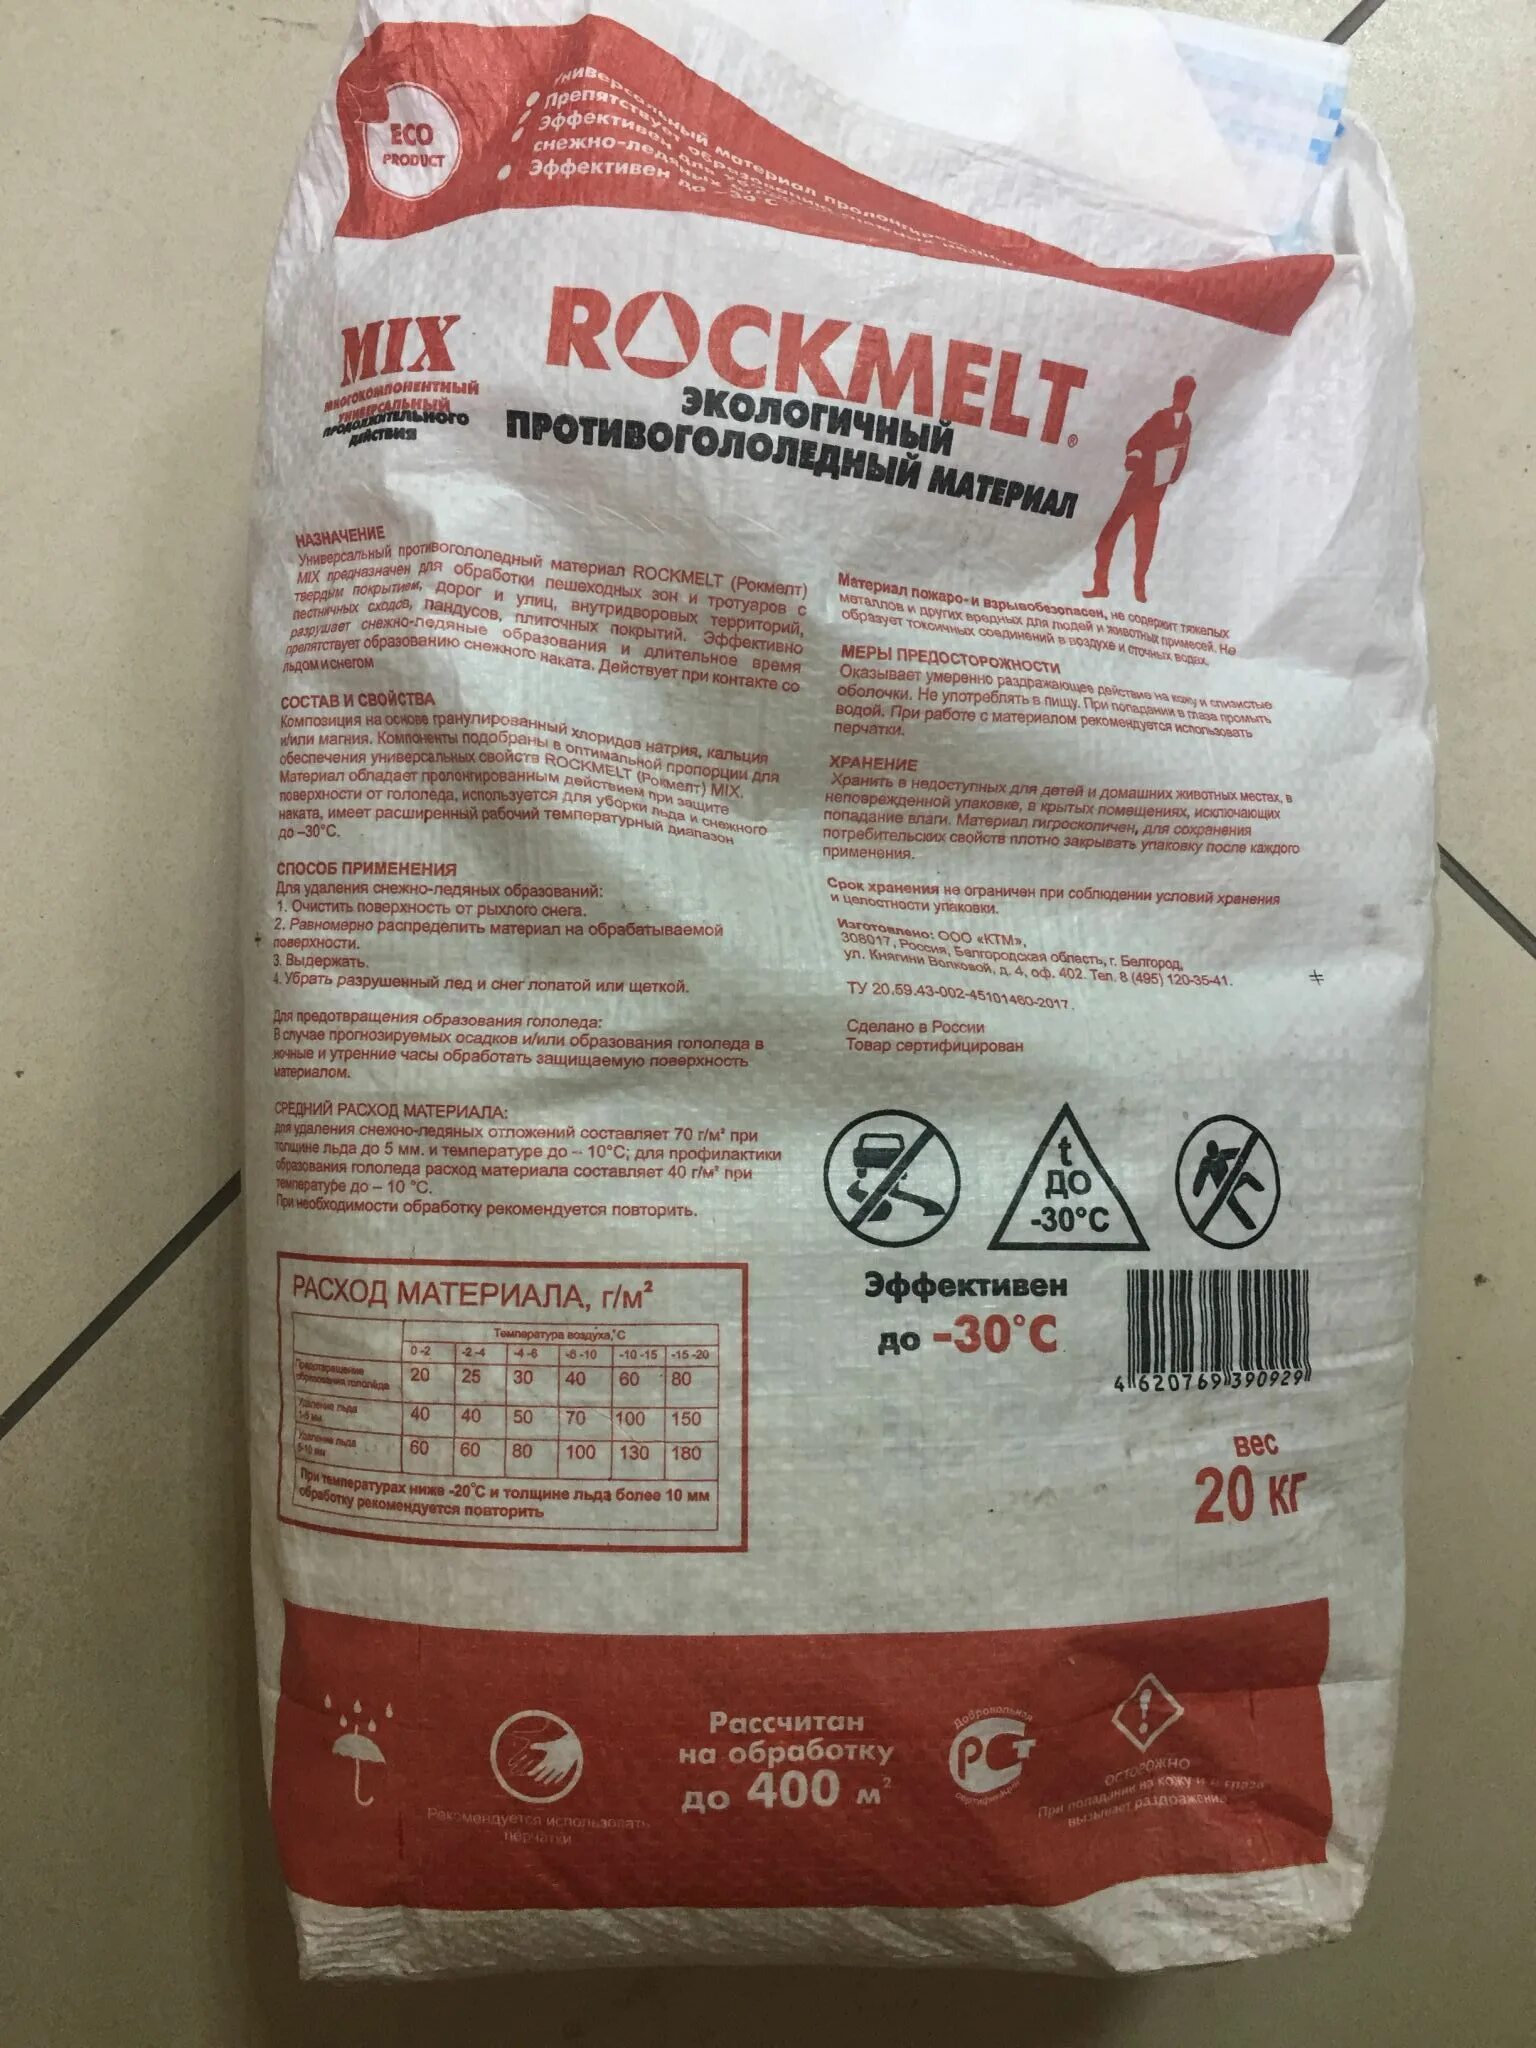 Реагент 20 кг. Реагент противогололедный ROCKMELT Mix. Реагент Рокмелт микс (ROCKMELT Mix) 20 кг. Противогололедный реагент ROCKMELT Mix 20 кг мешок состав. Противогололедный реагент, мешок 20кг ROCKMELT Salt.